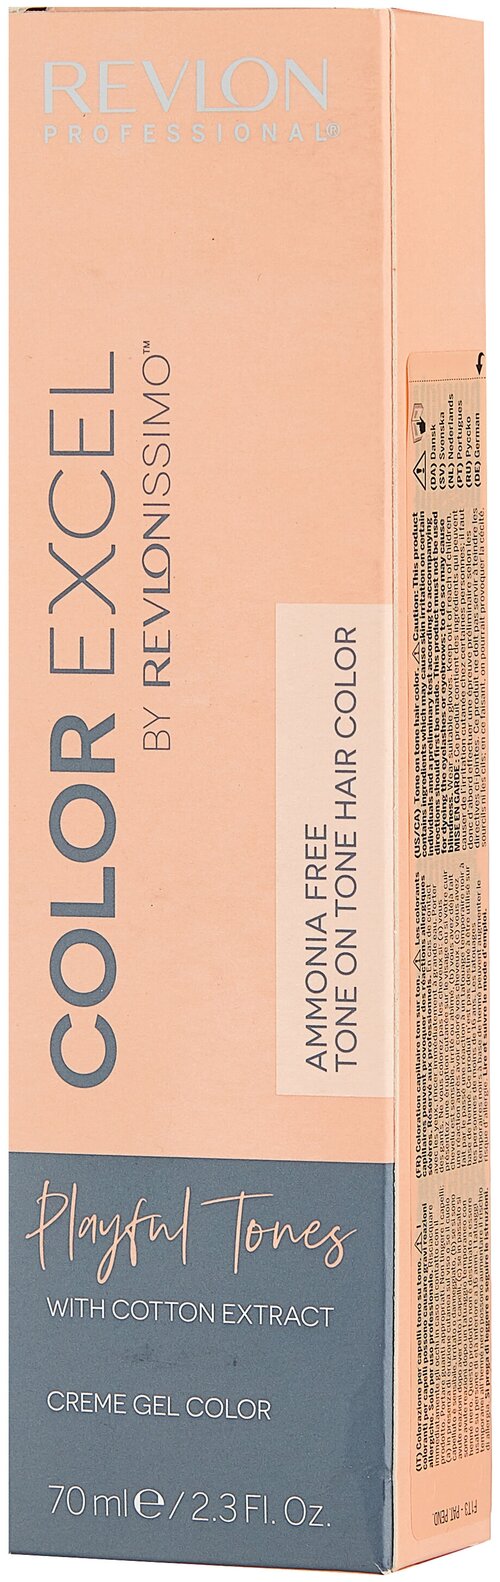 Revlon Professional Revlonissimo Color Excel Playful tones полуперманентный краситель, 400 насыщенный персиковый